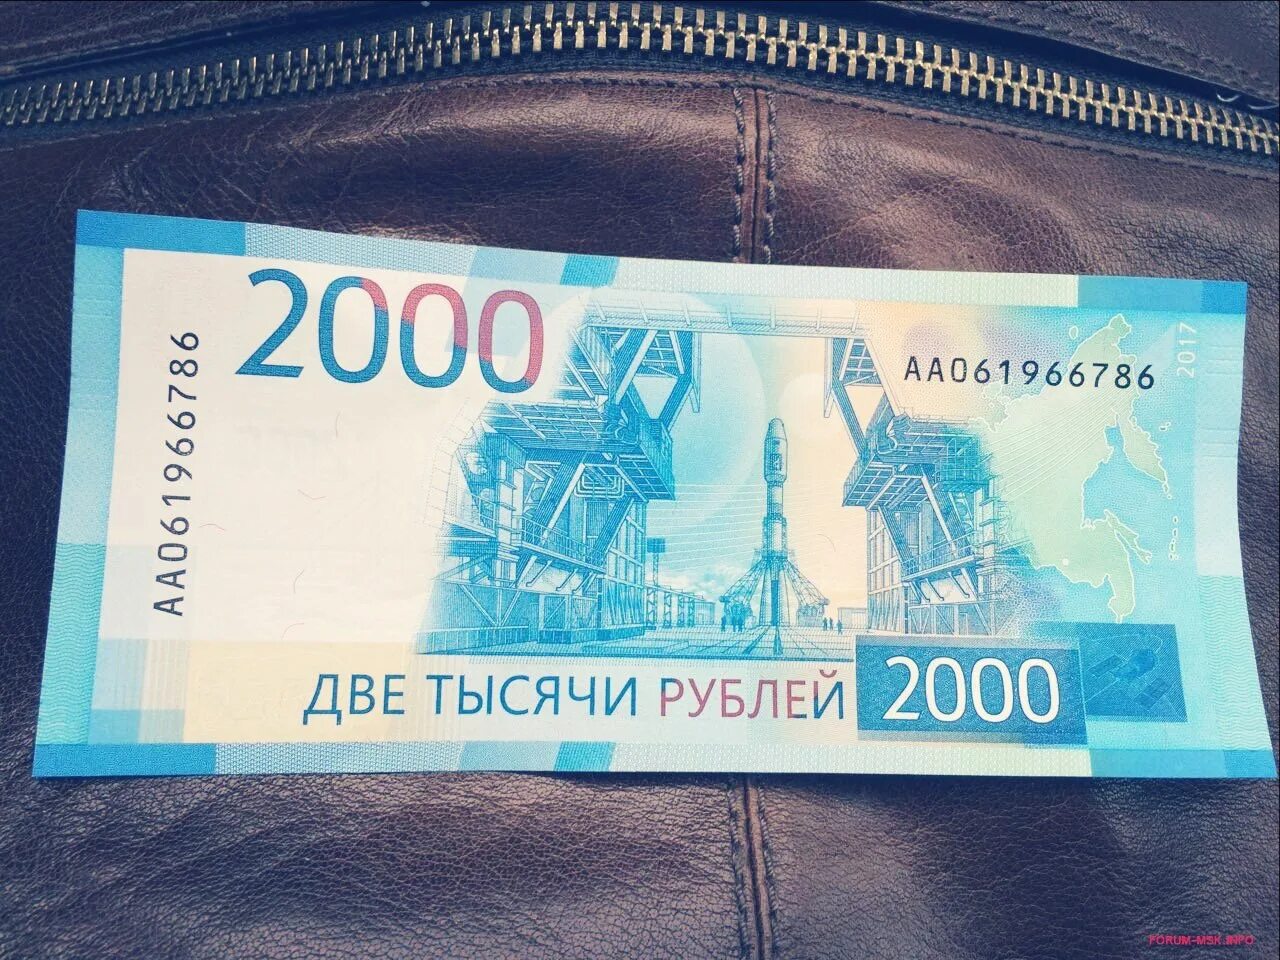 Купюра 2000 рублей. 2000 Тысячи рублей купюра. 1000 Рублей и 2000 рублей. Две тысячи рублей купюра.